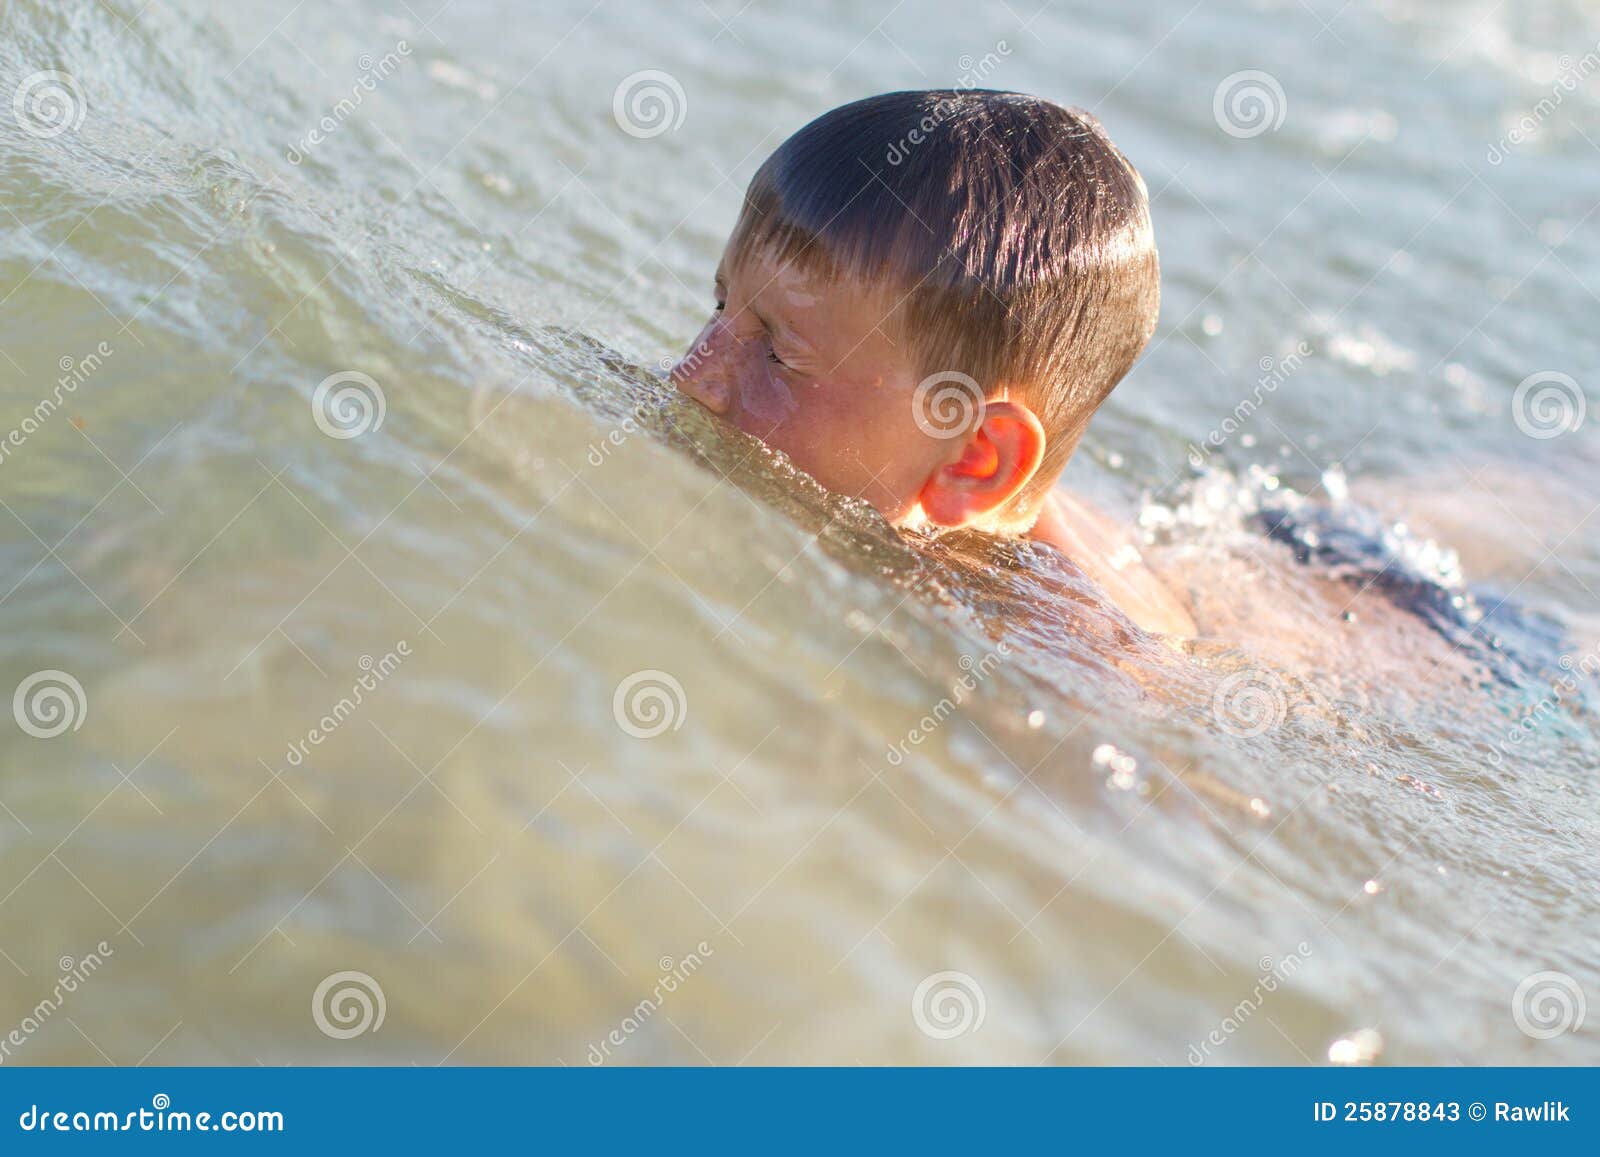 Мальчики купаются вместе. Купание мальчика 10 лет. Мальчики 10 лет купаются в море. Мальчик купается радостный в море. Купание мальчика 10 лет на море.